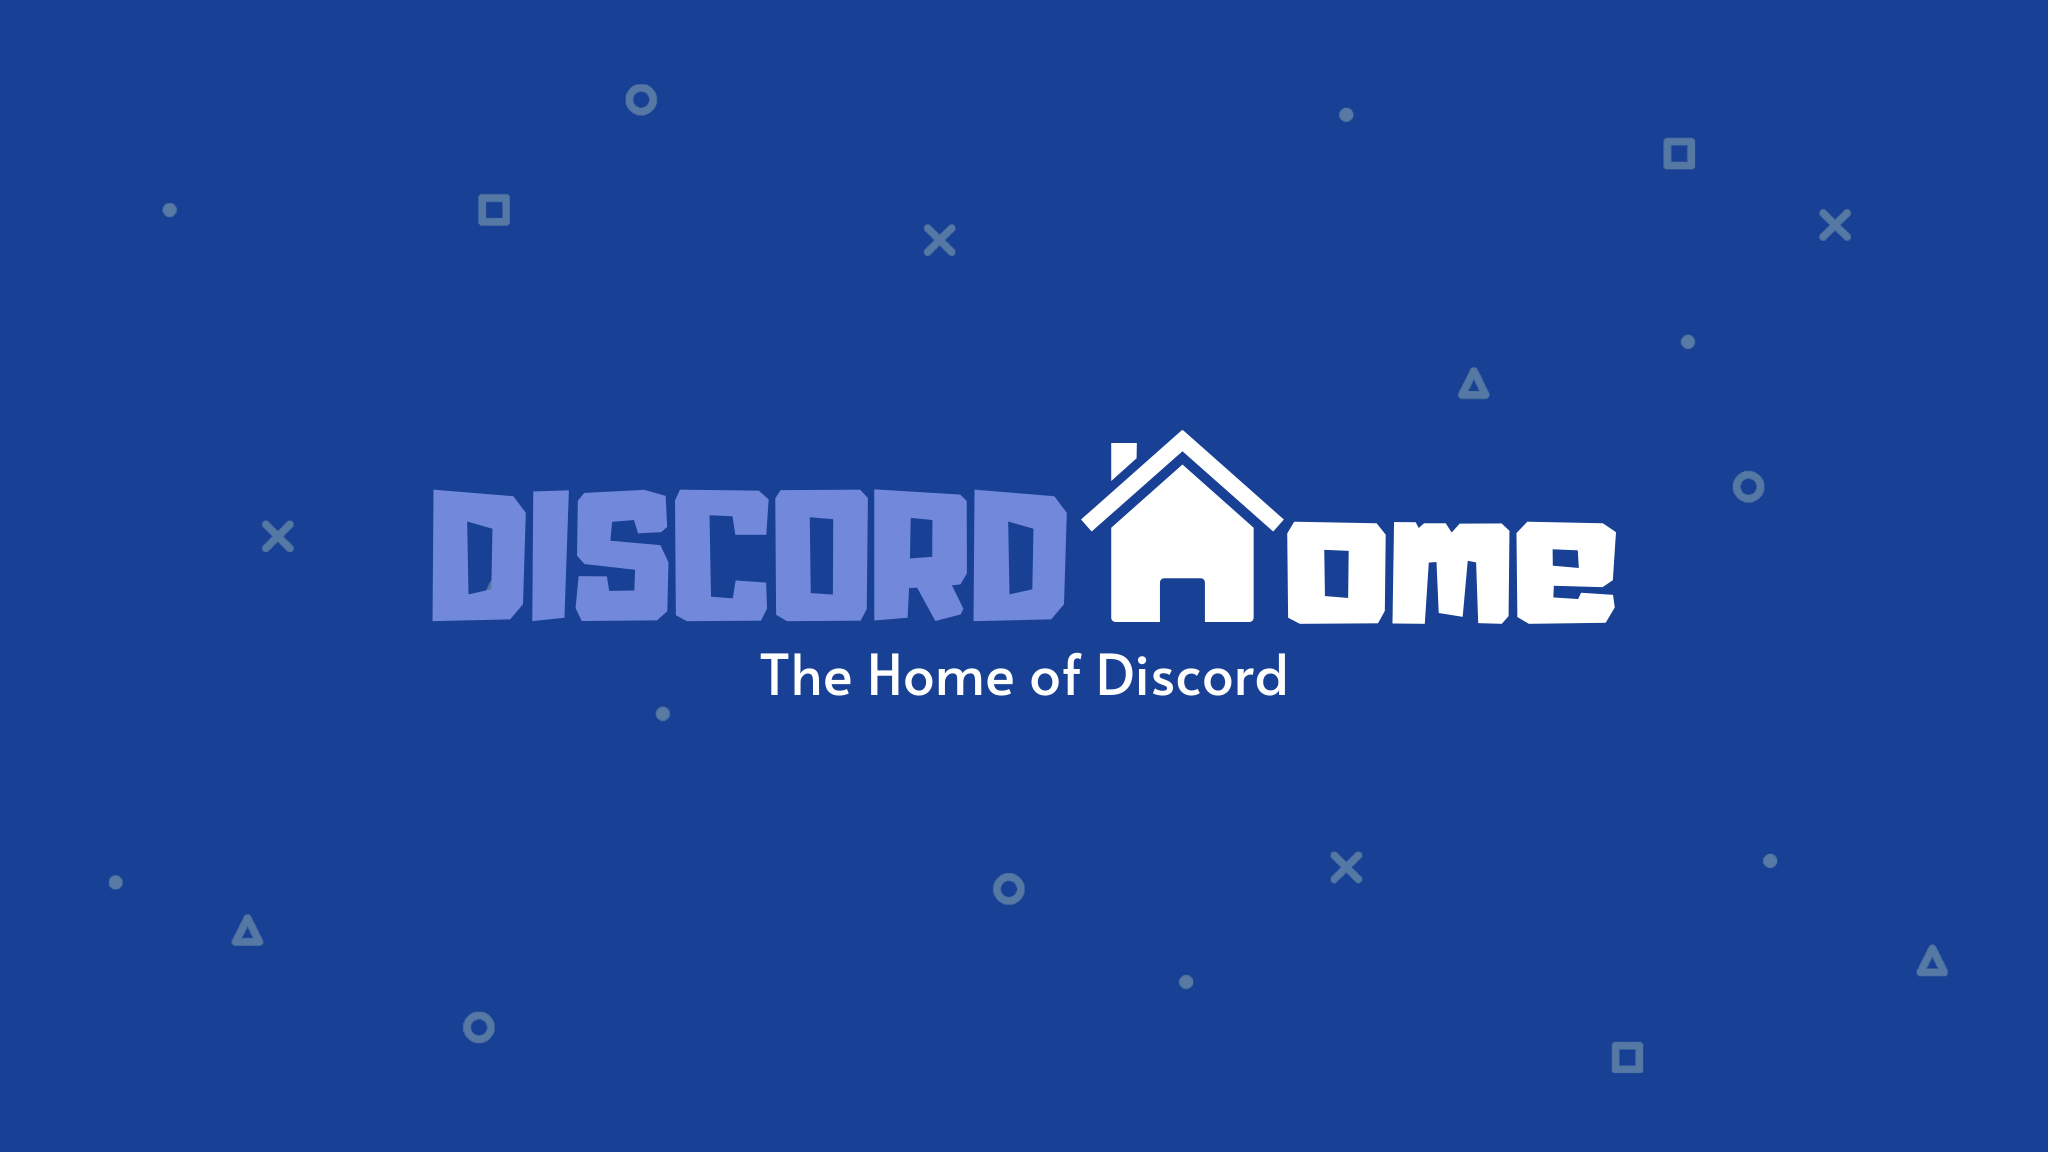 Discordhome.com